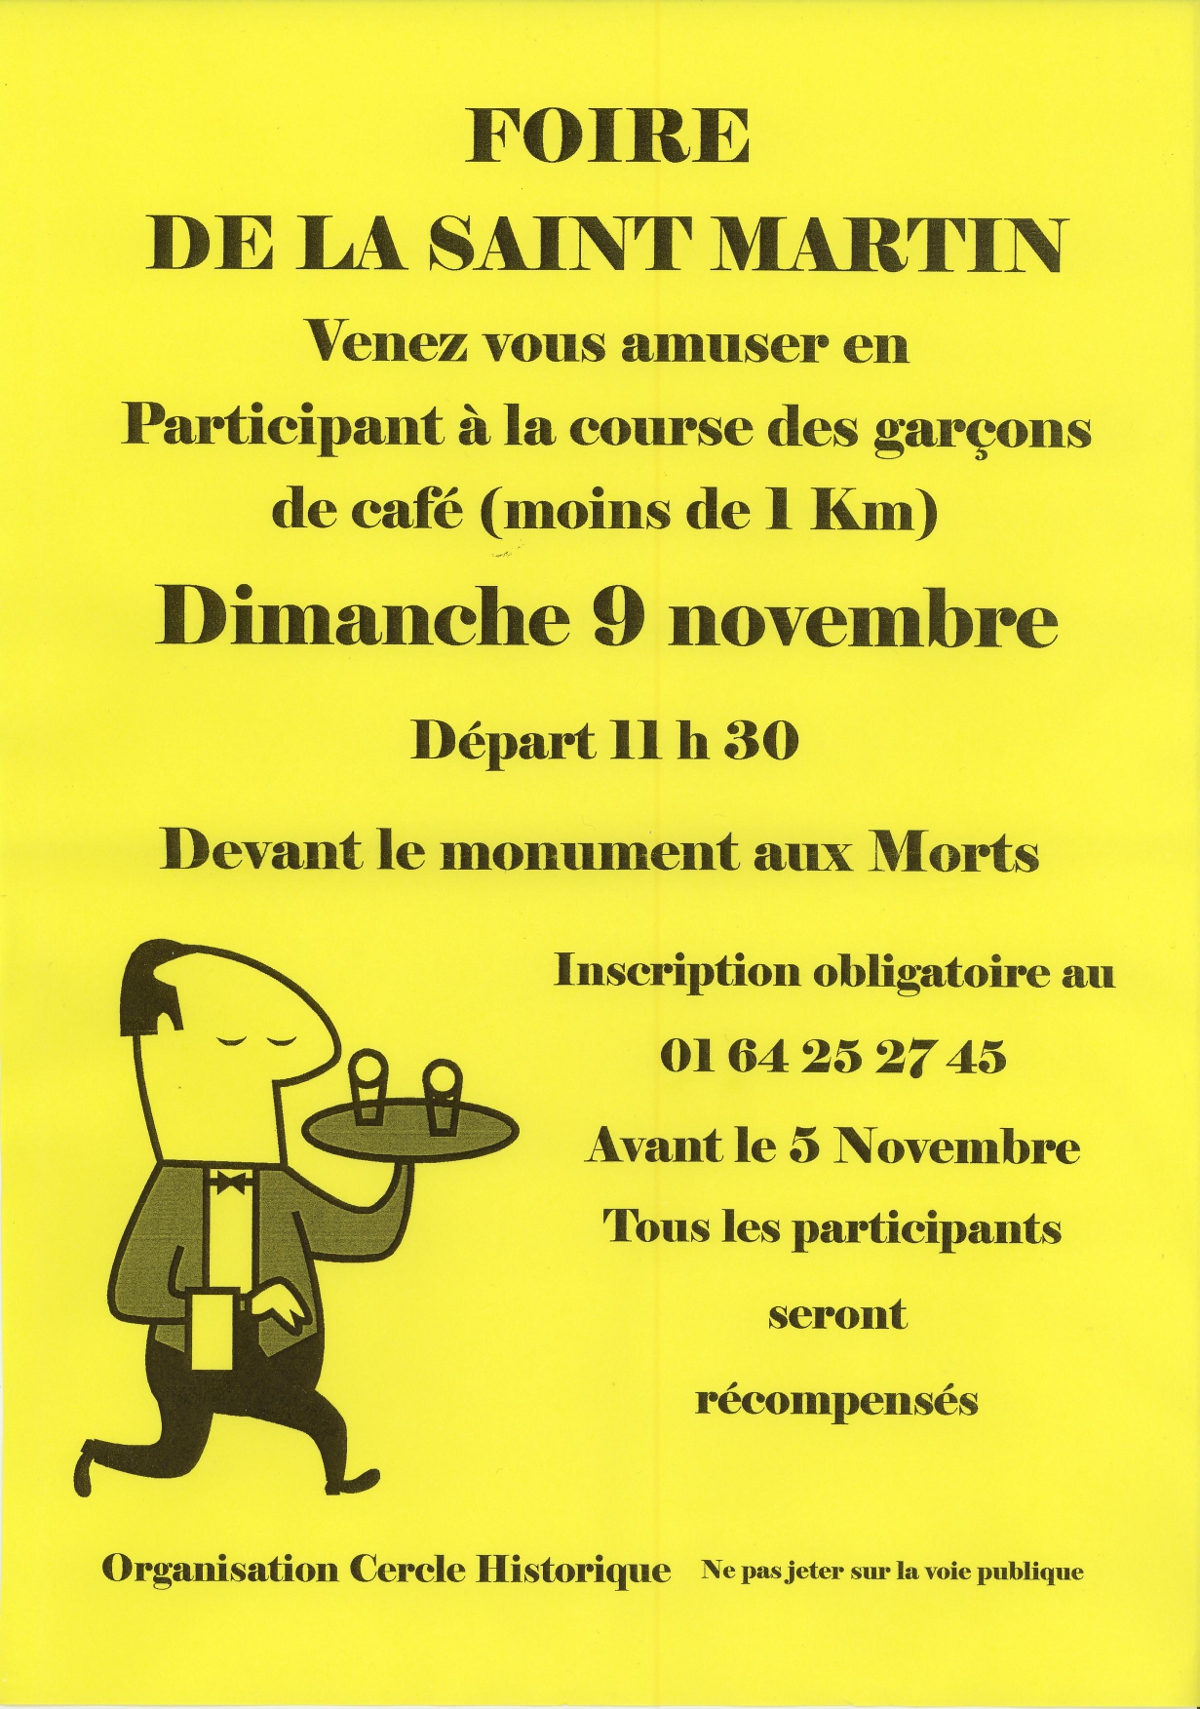 Foire Saint-Martin Course Garcons Cafe